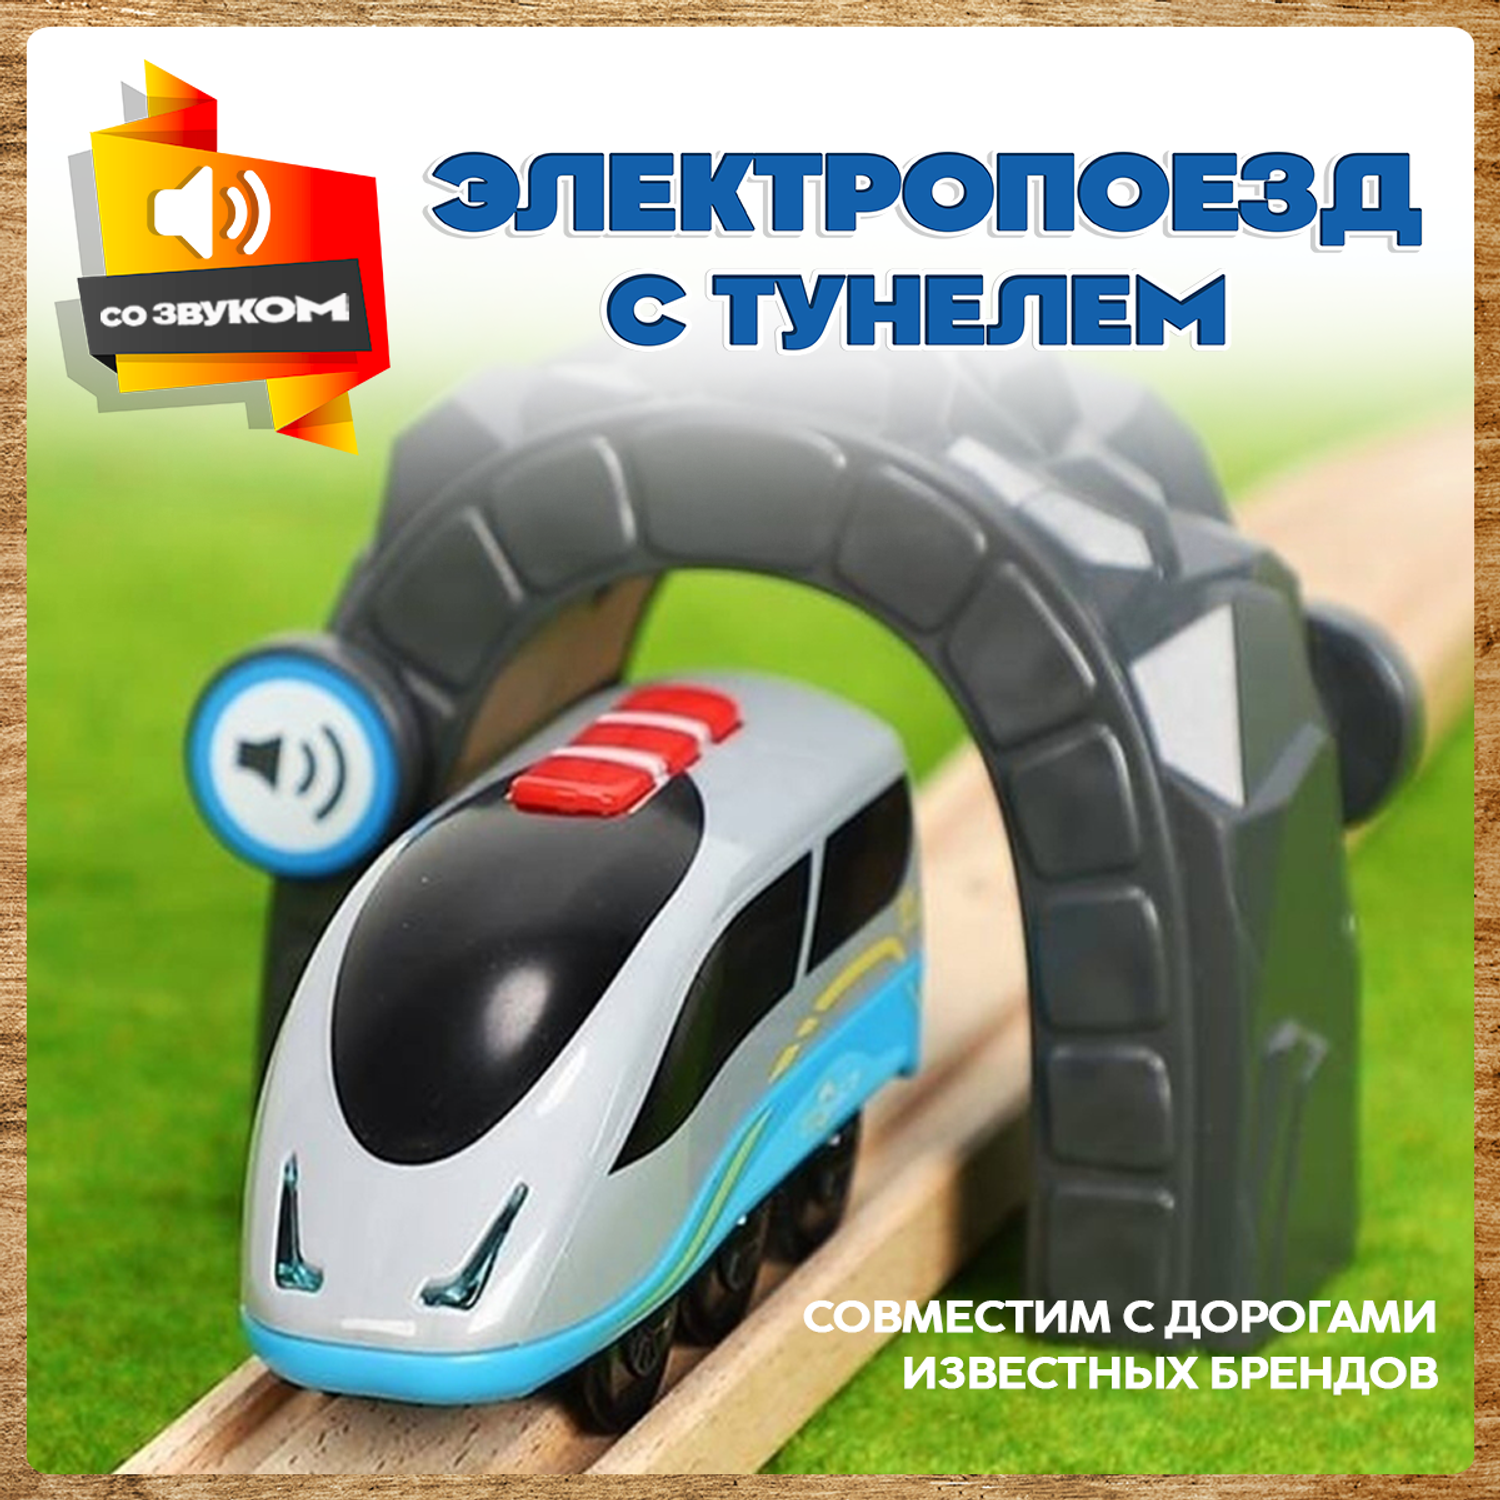 Поезд детский со светом А.Паровозиков с тунелем игрушечная модель на батарейках АП-001/ПЛ-0001 - фото 1